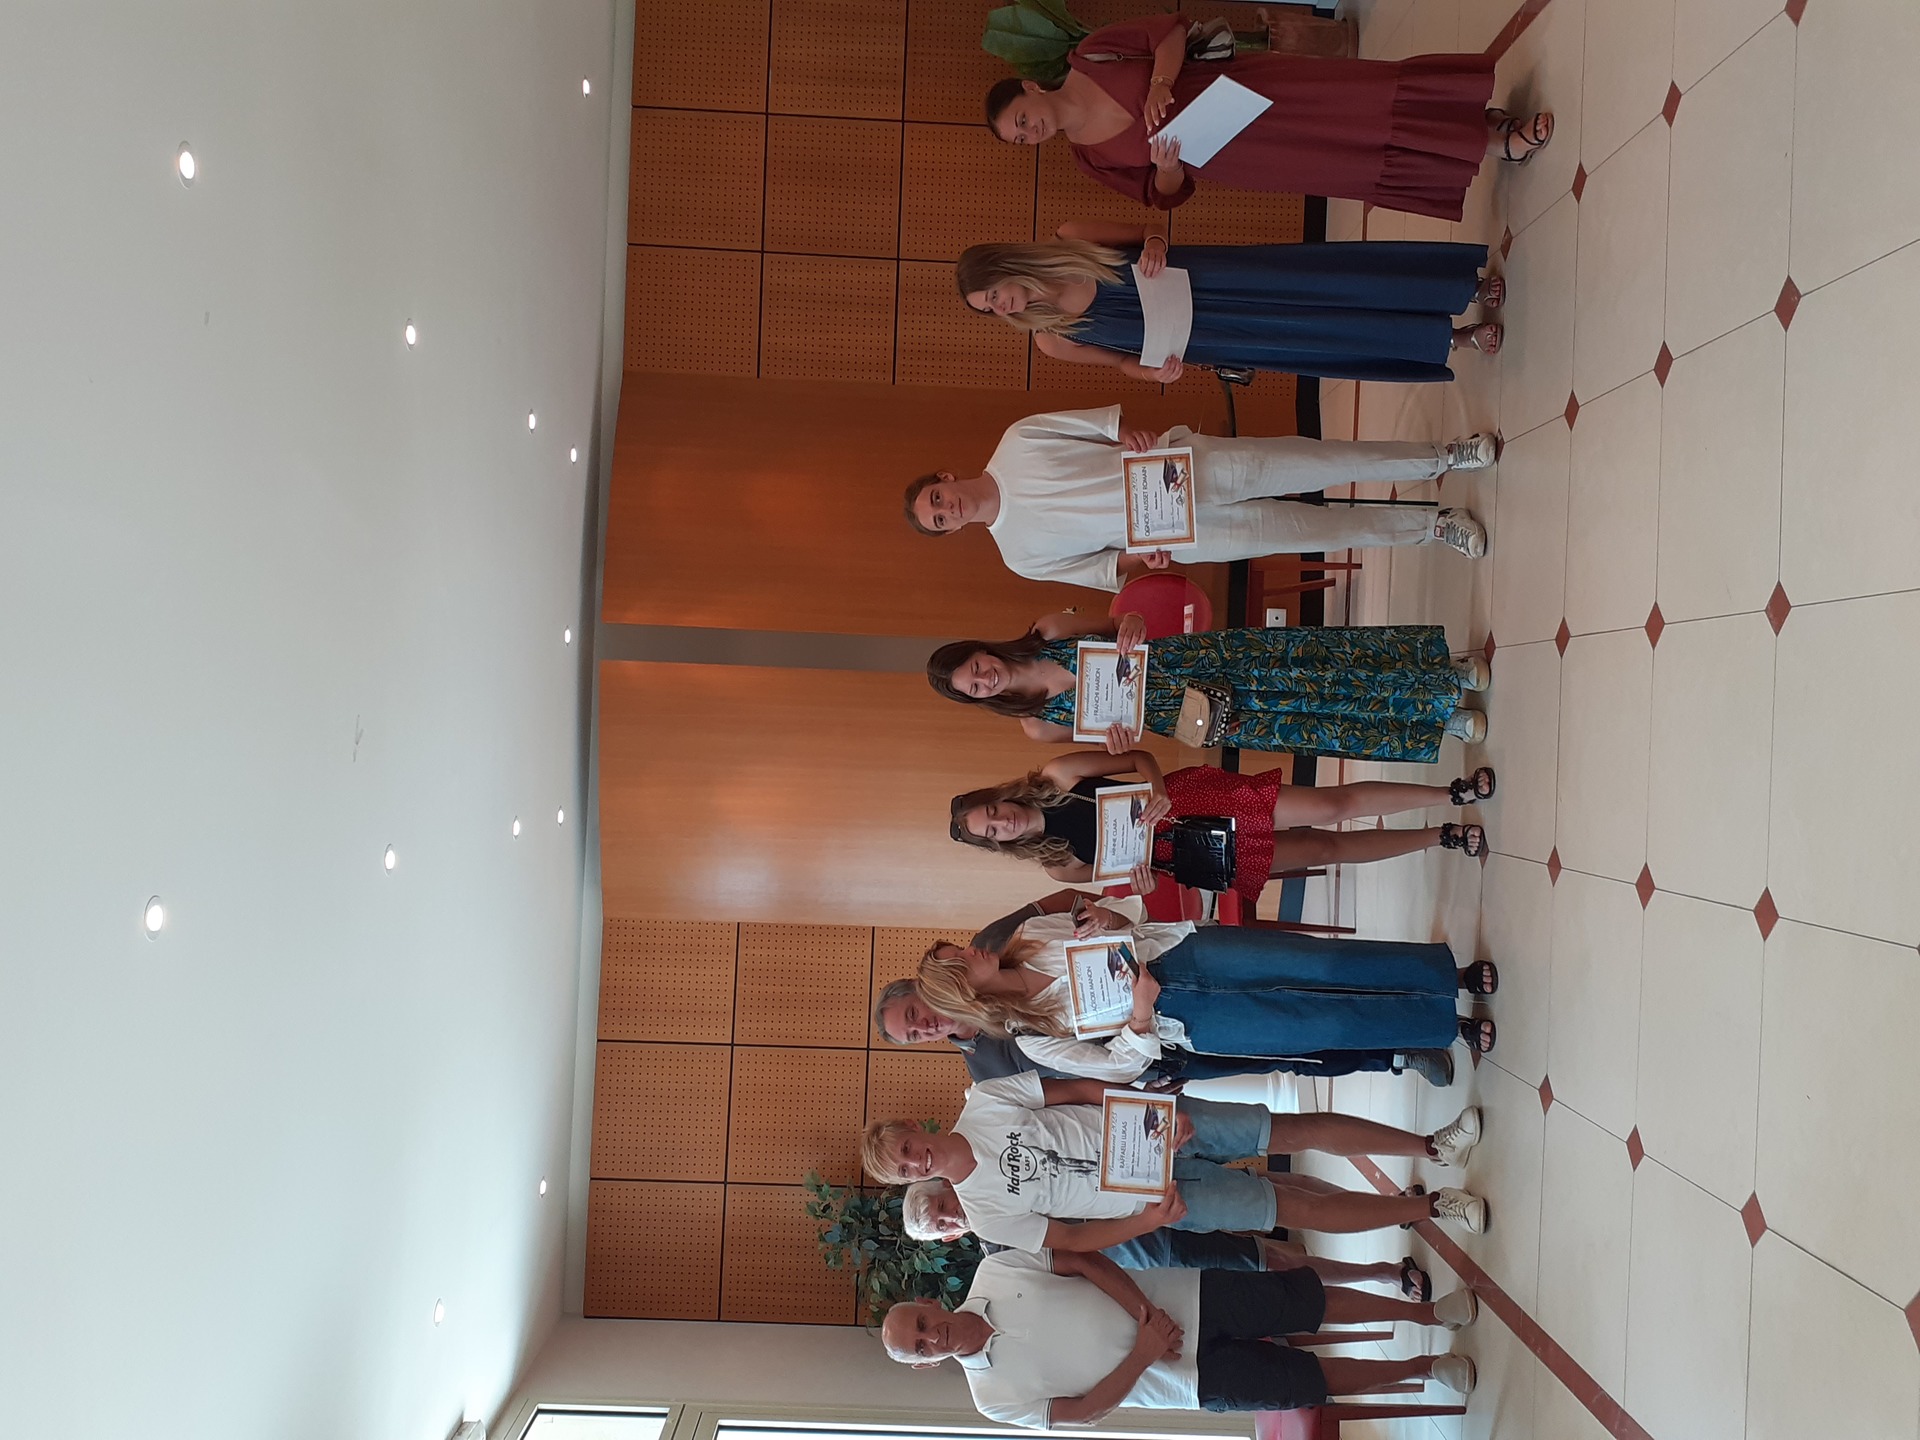 Les lauréats du Baccalauréat avec mention de la Commune de Santa Maria di Lota, ont été récompensés ce jour à l'occasion d'une réception en leur honneur au sein de la Mairie ! 